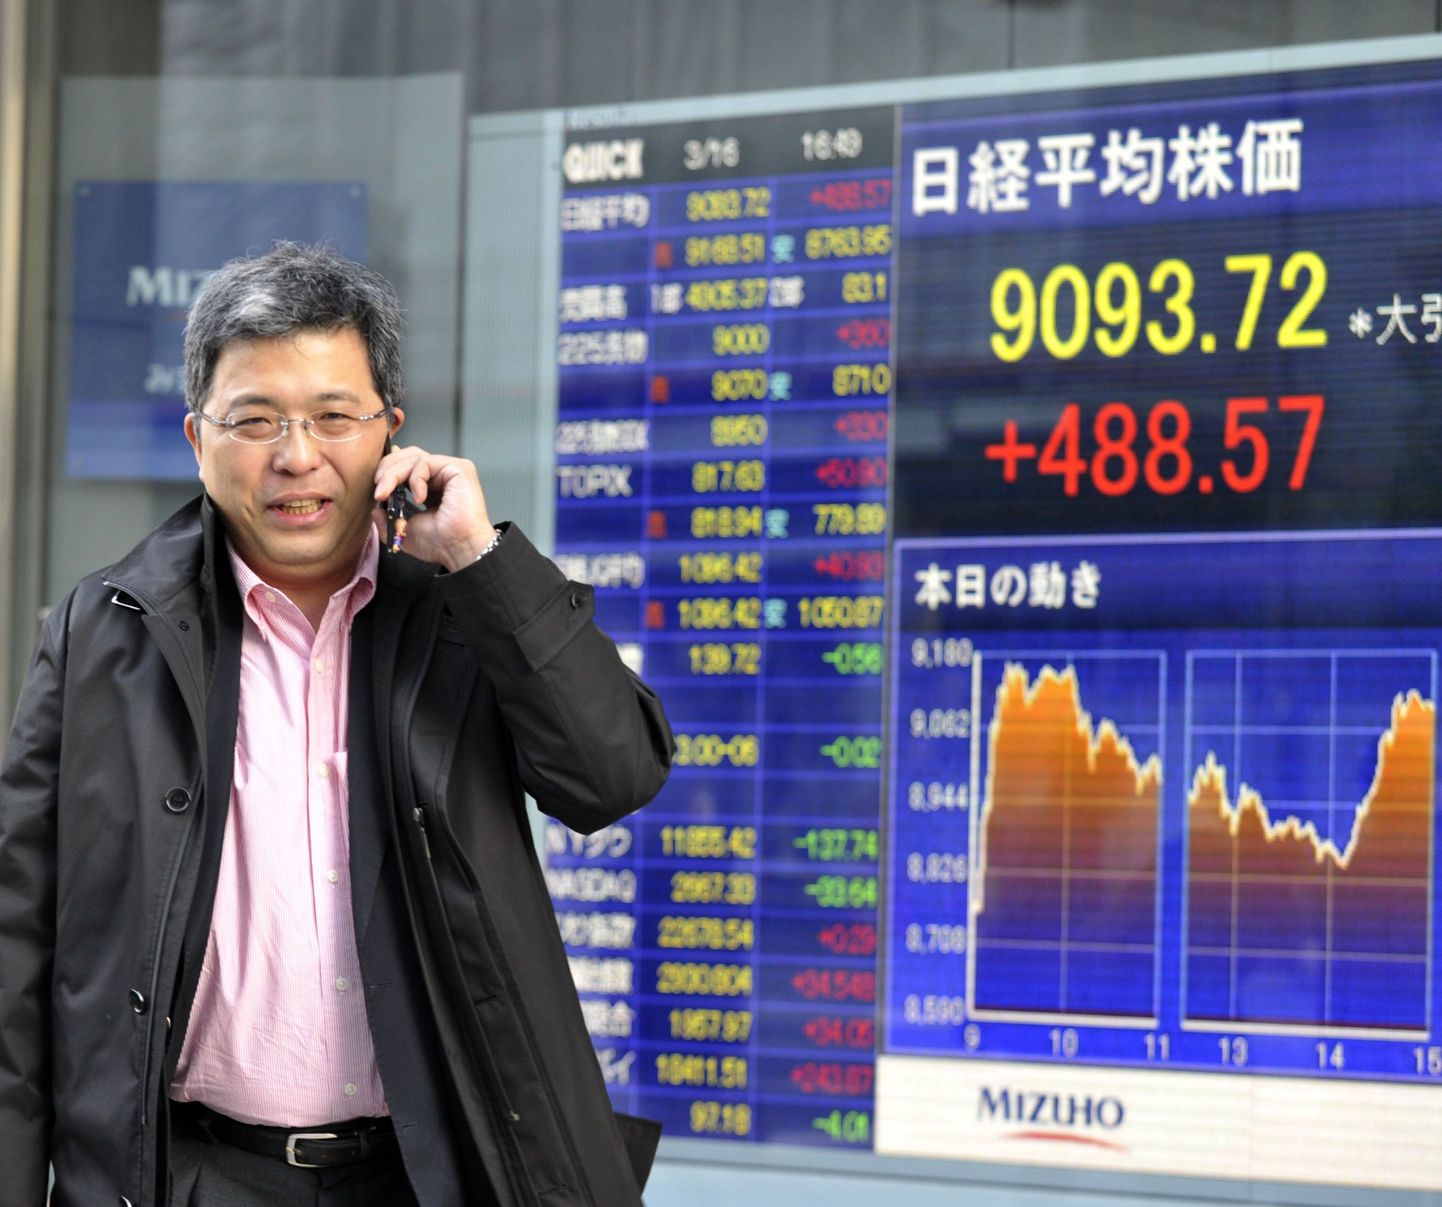 Ärimees täna Tokyo börsi elektroonilise tabloo eest mööda jalutamas. Aktsiahinnad pöörasid täna esmakordselt viimase viie päeva jooksul tõusule ning Nikkei 225 indeks kerkis 488,57 punkti 9 093,72 punkti tasemele.